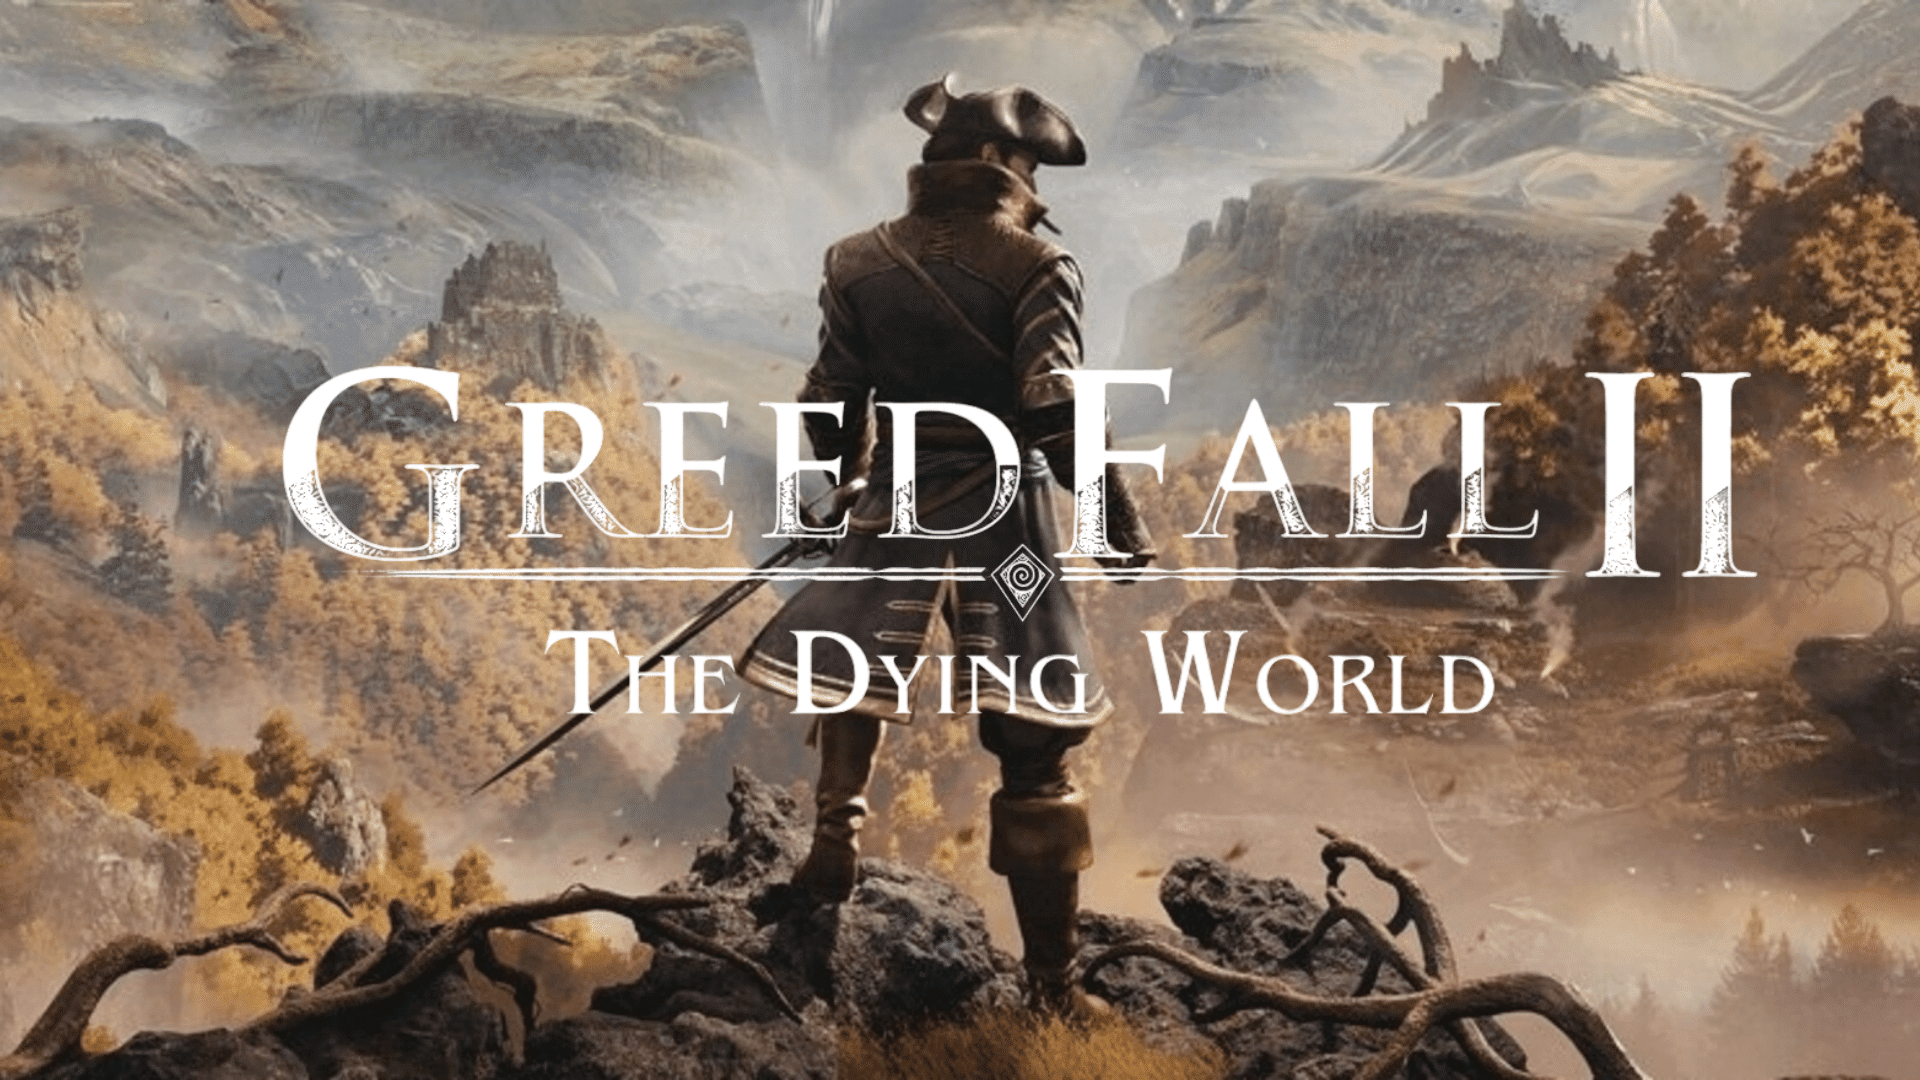 Utvecklarna av GreedFall 2: The Dying World har avslöjat nya detaljer om spelet: "fler romantiska möjligheter" och potentiella cameos från den tidigare delen av spelet